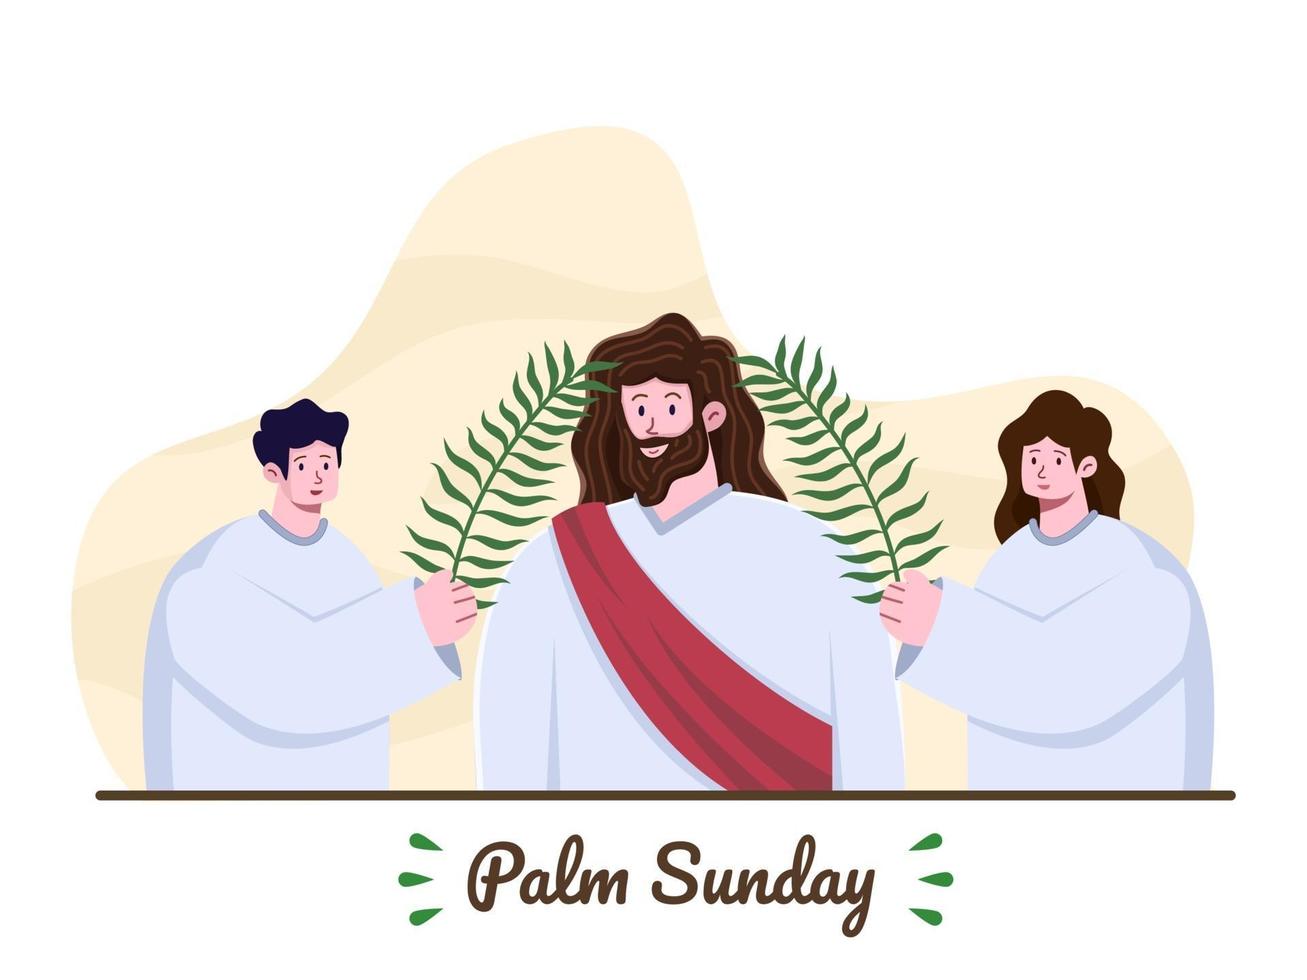 Palmzondag. Jezus komt Jeruzalem binnen en mensen begroeten hem met palmbladeren. Jezus komt als koning naar Jeruzalem. christelijke religieuze feestdag. christelijke bijbelse verhaalillustratie. vector